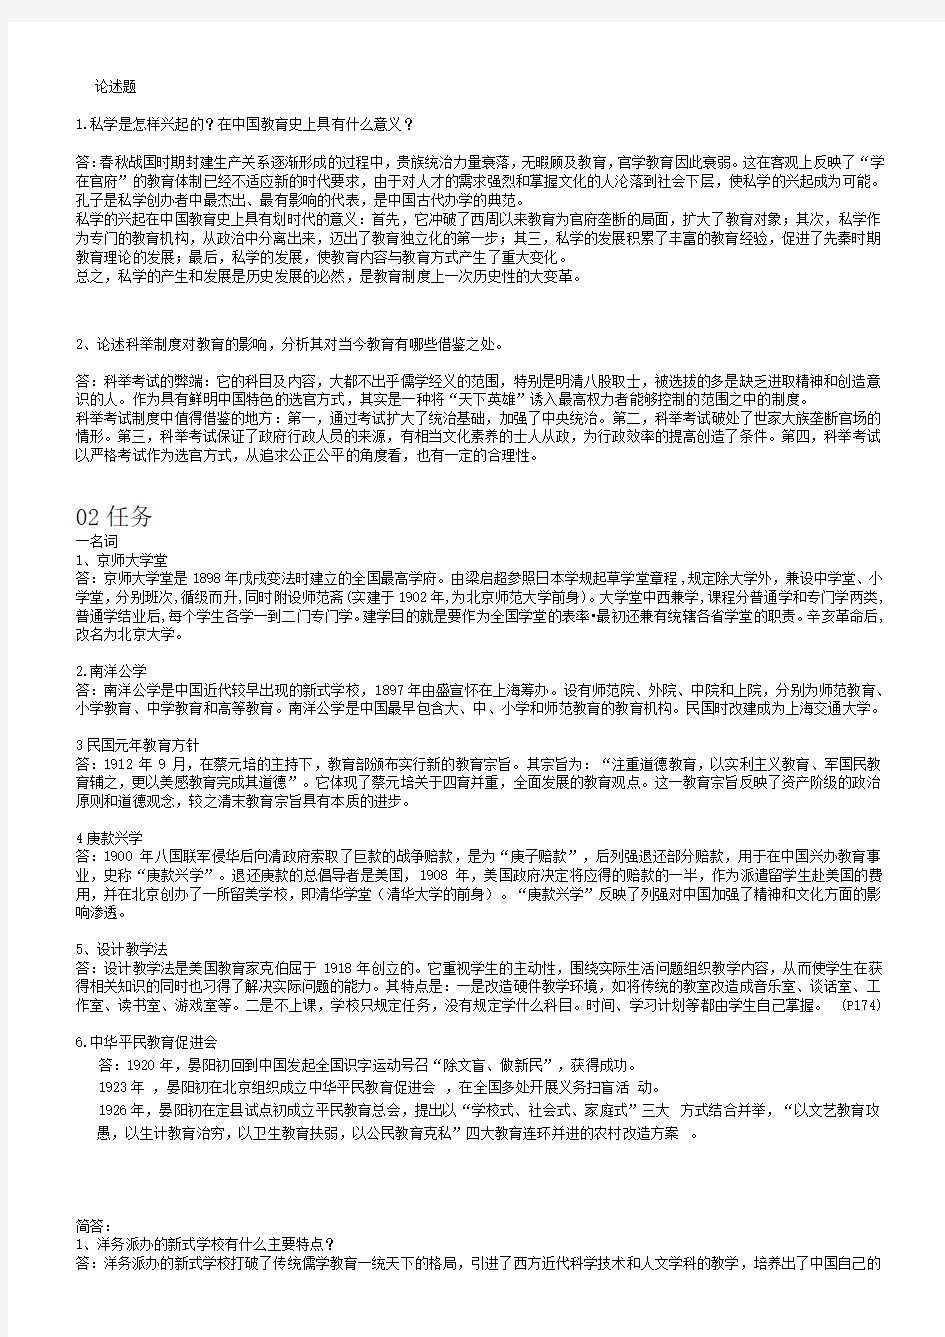 2016年中国教育简史形考题01-04任务答案